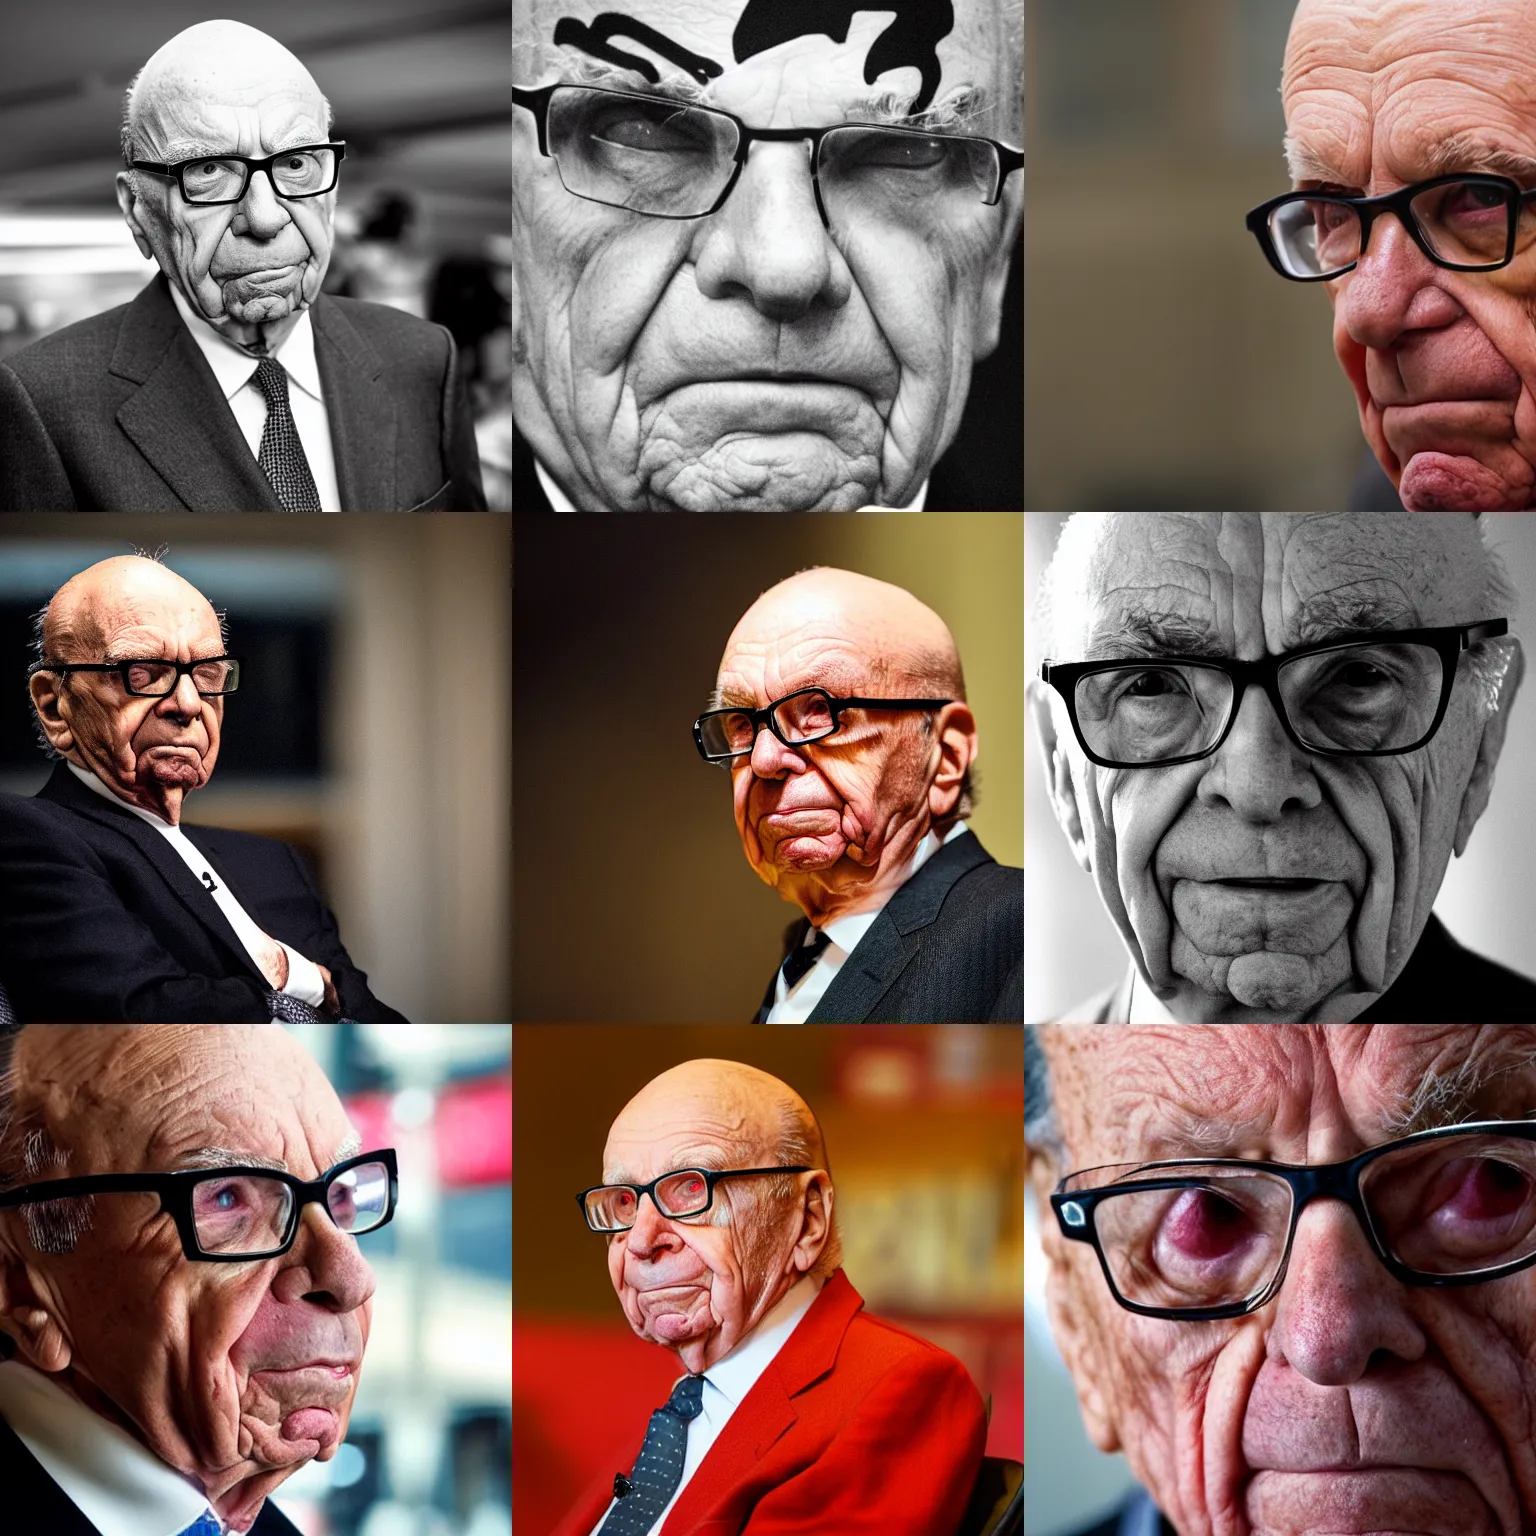 Prompt: Rupert Murdoch as Satan, Rupert Murdoch, satan, portrait photography, depth of field, bokeh